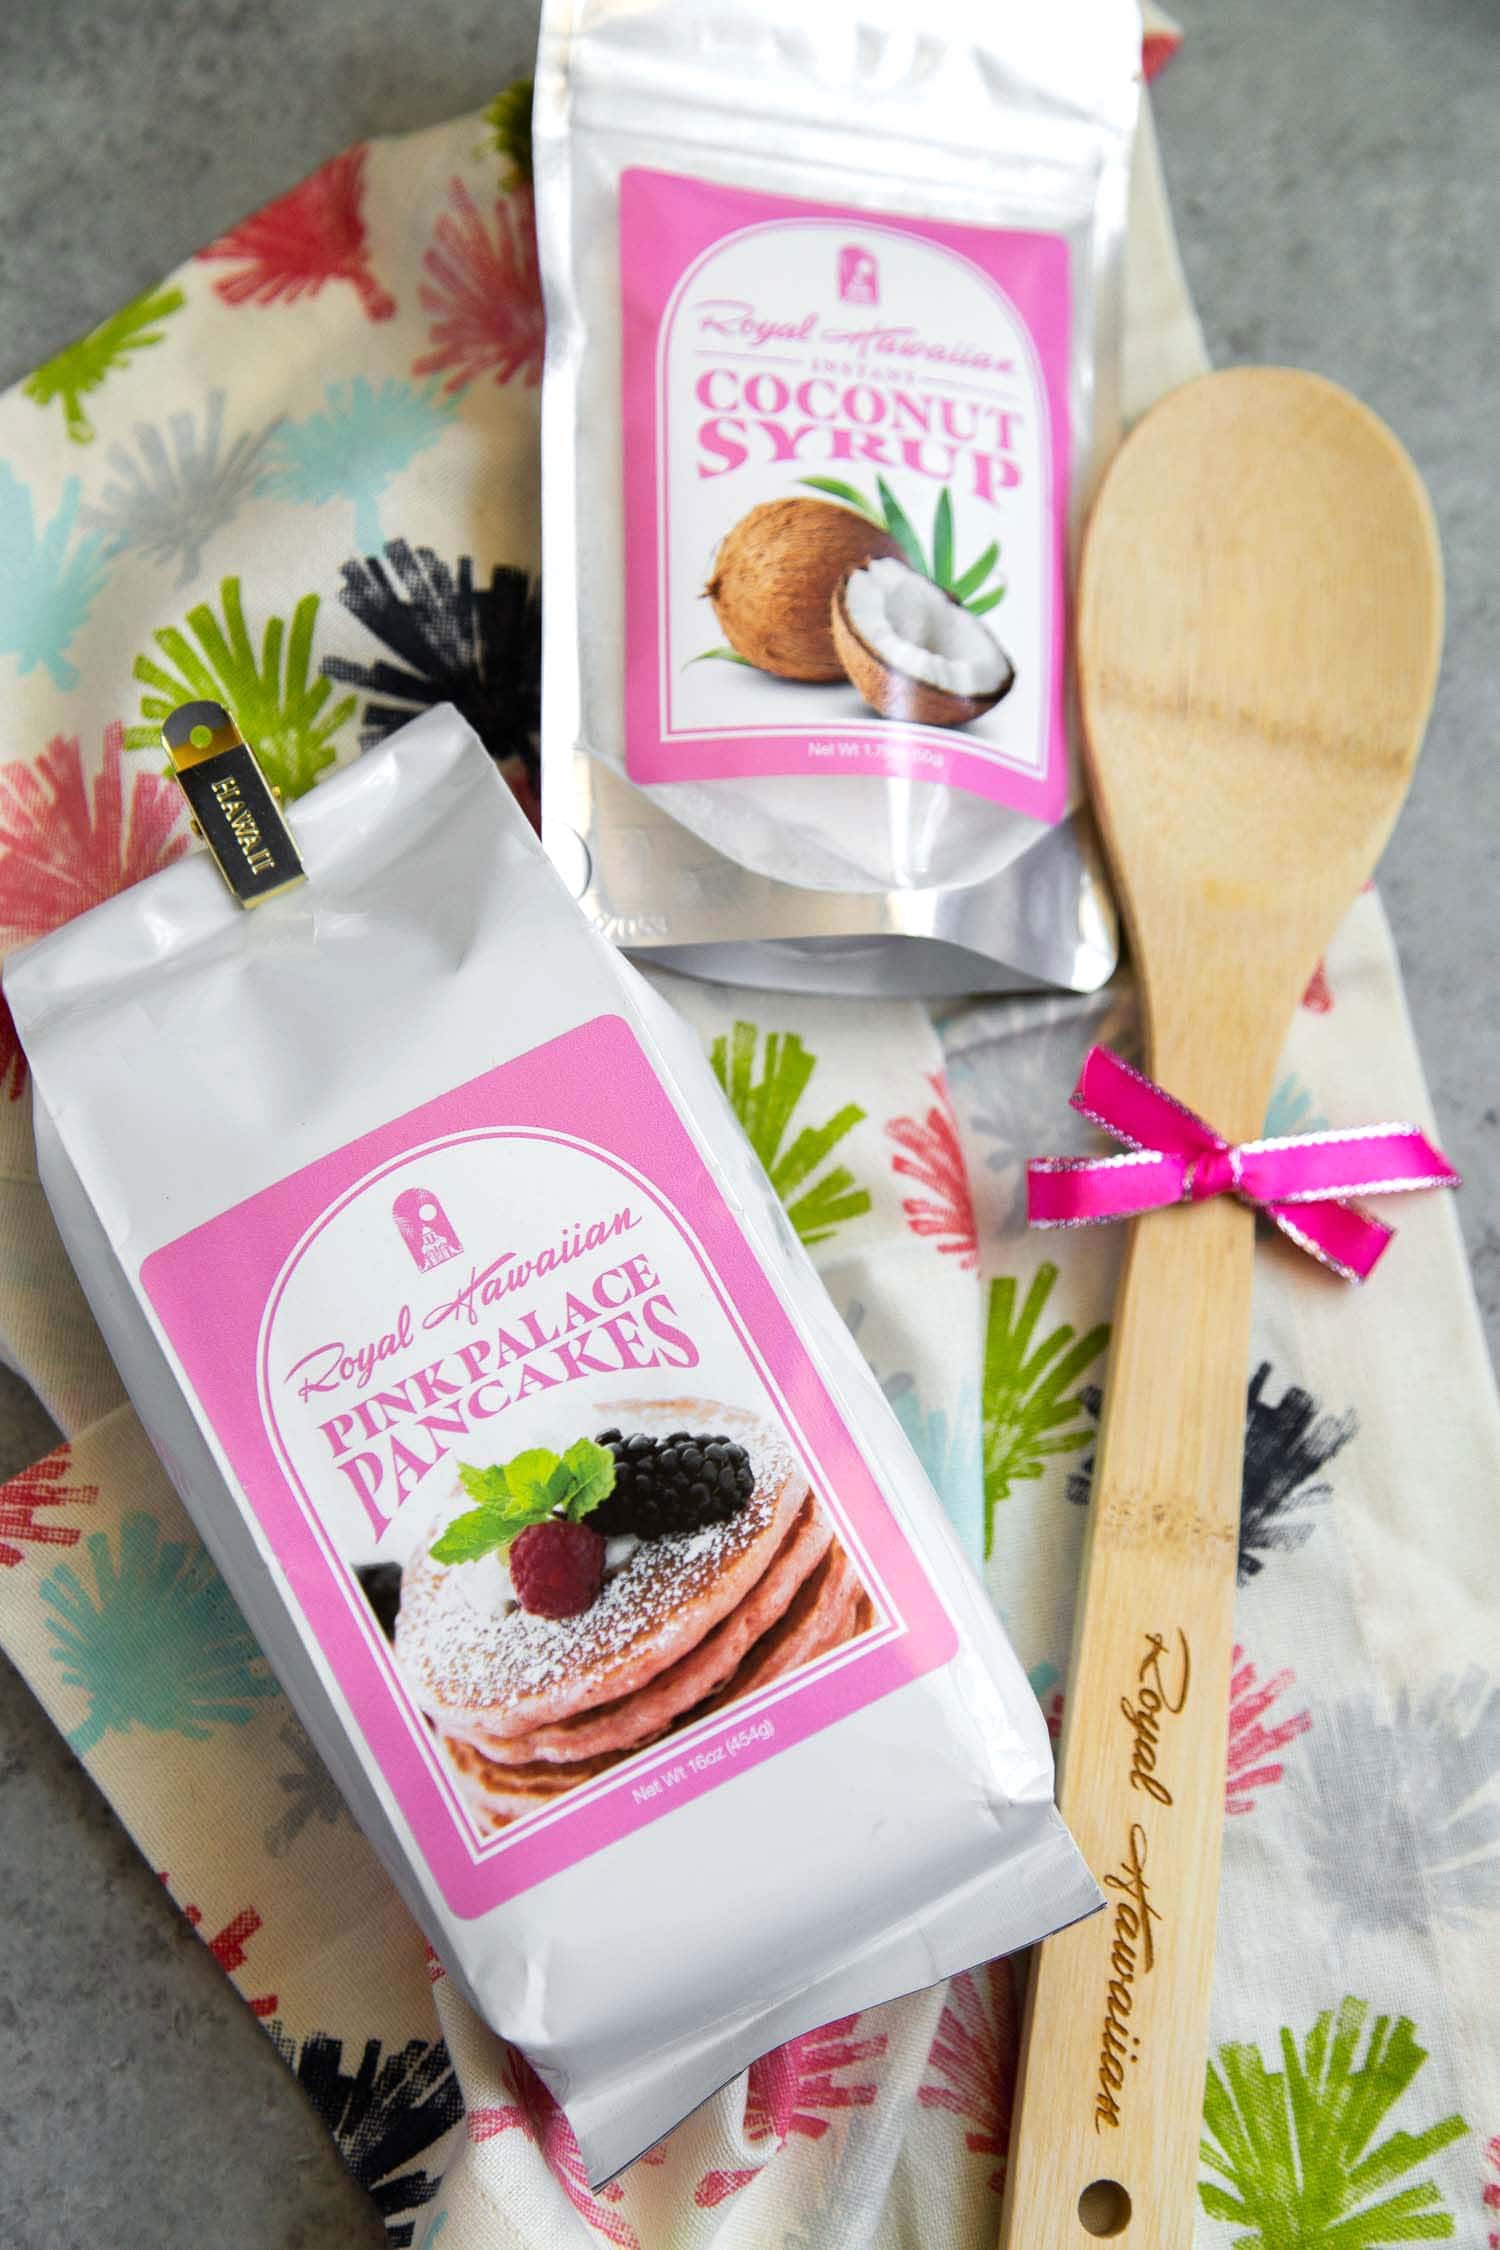 Royal Hawaiian sells Pink Palace Pancake Mix and Coconut Syrup Packet at the hotel bakery